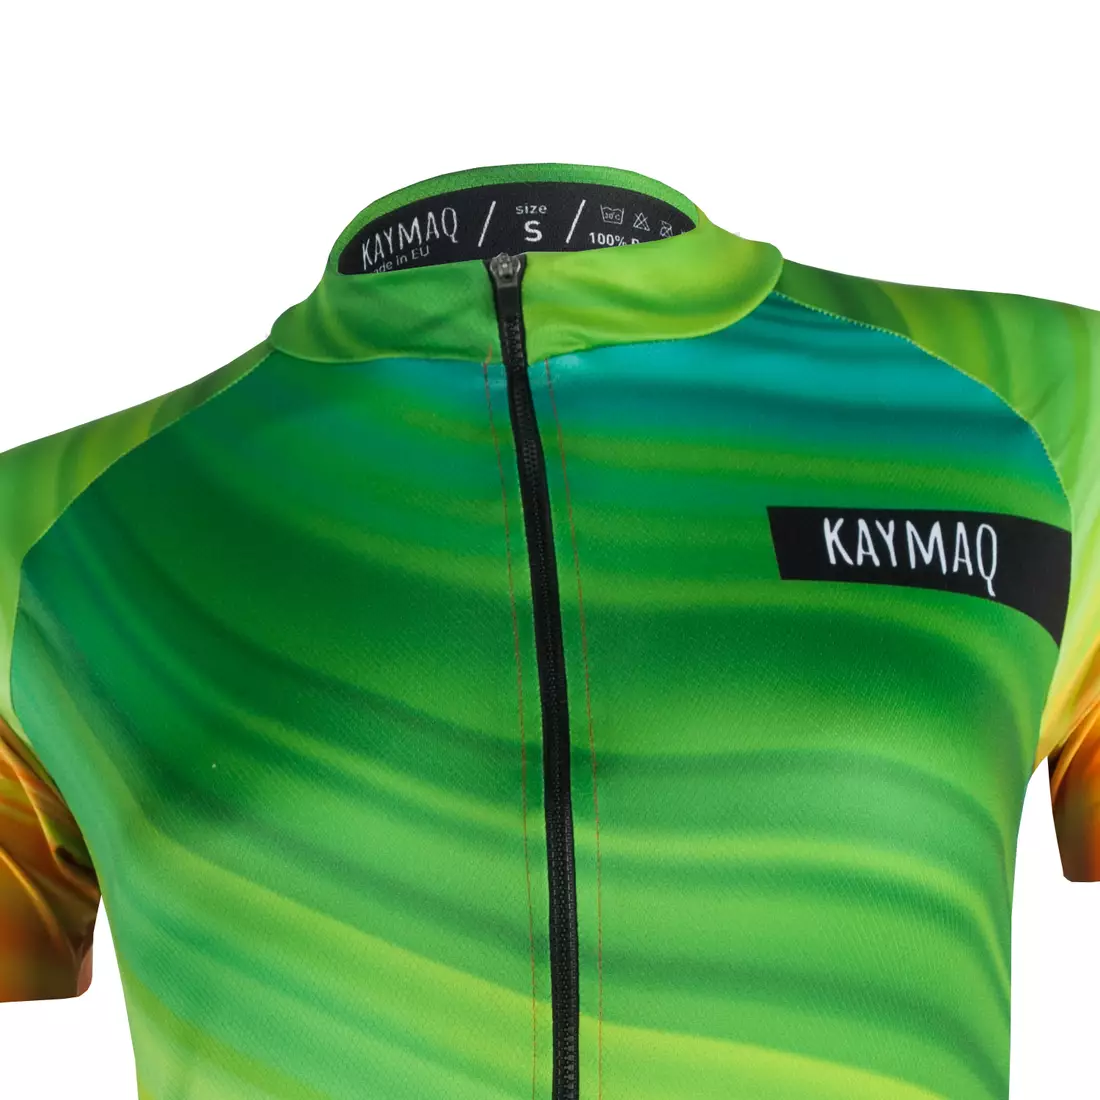 KAYMAQ DESIGN W18 dámsky cyklistický dres s krátkym rukávom